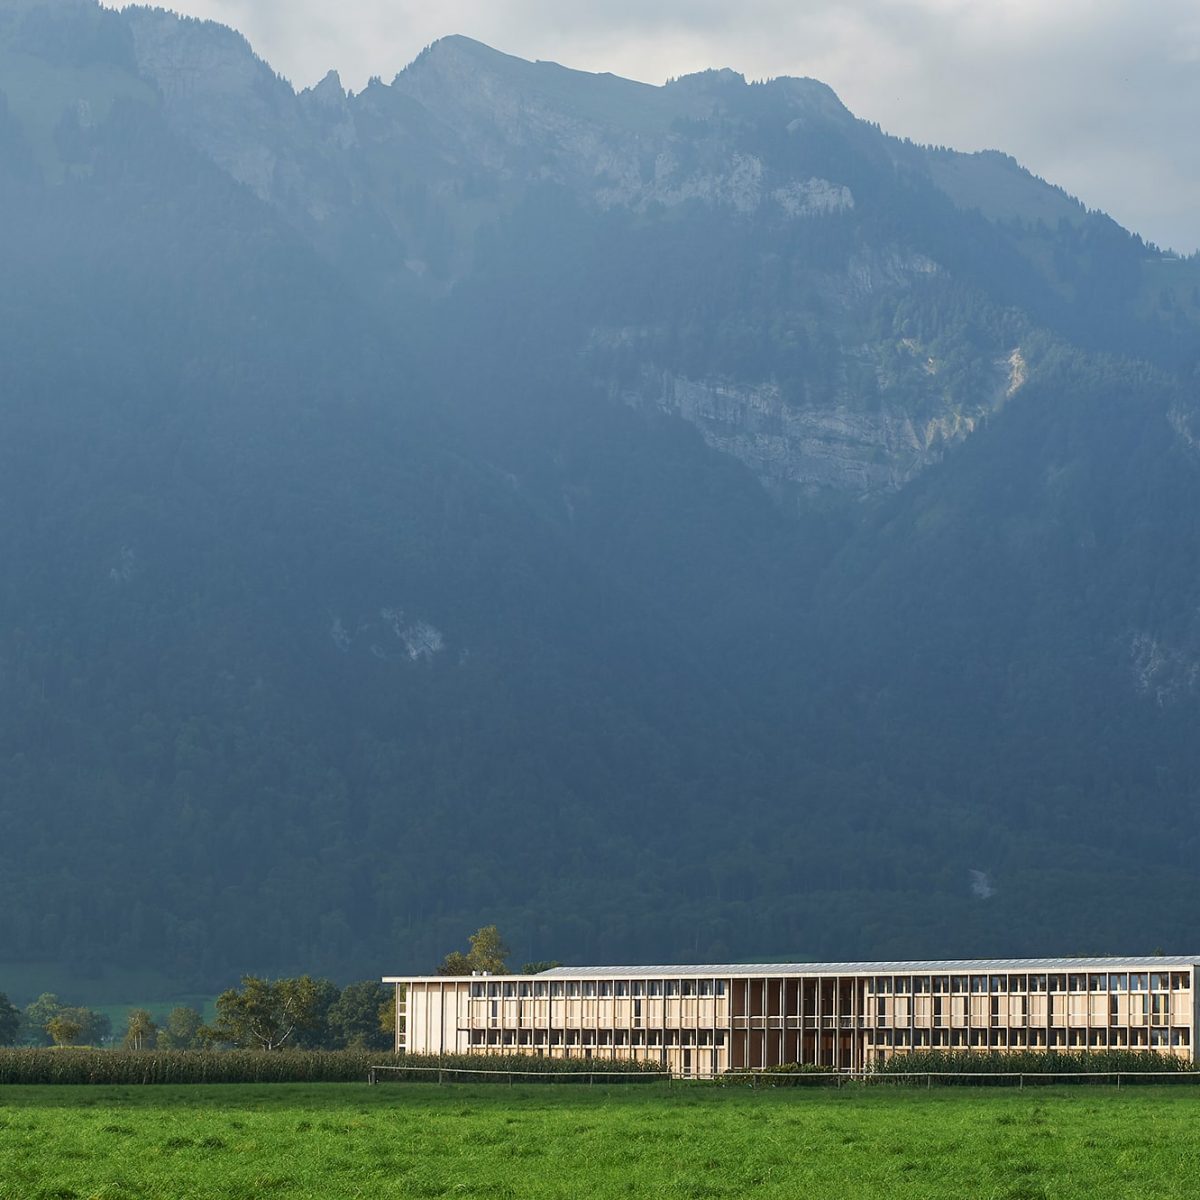 Zemědělské centrum ve Švýcarsku sází na low-tech přístup